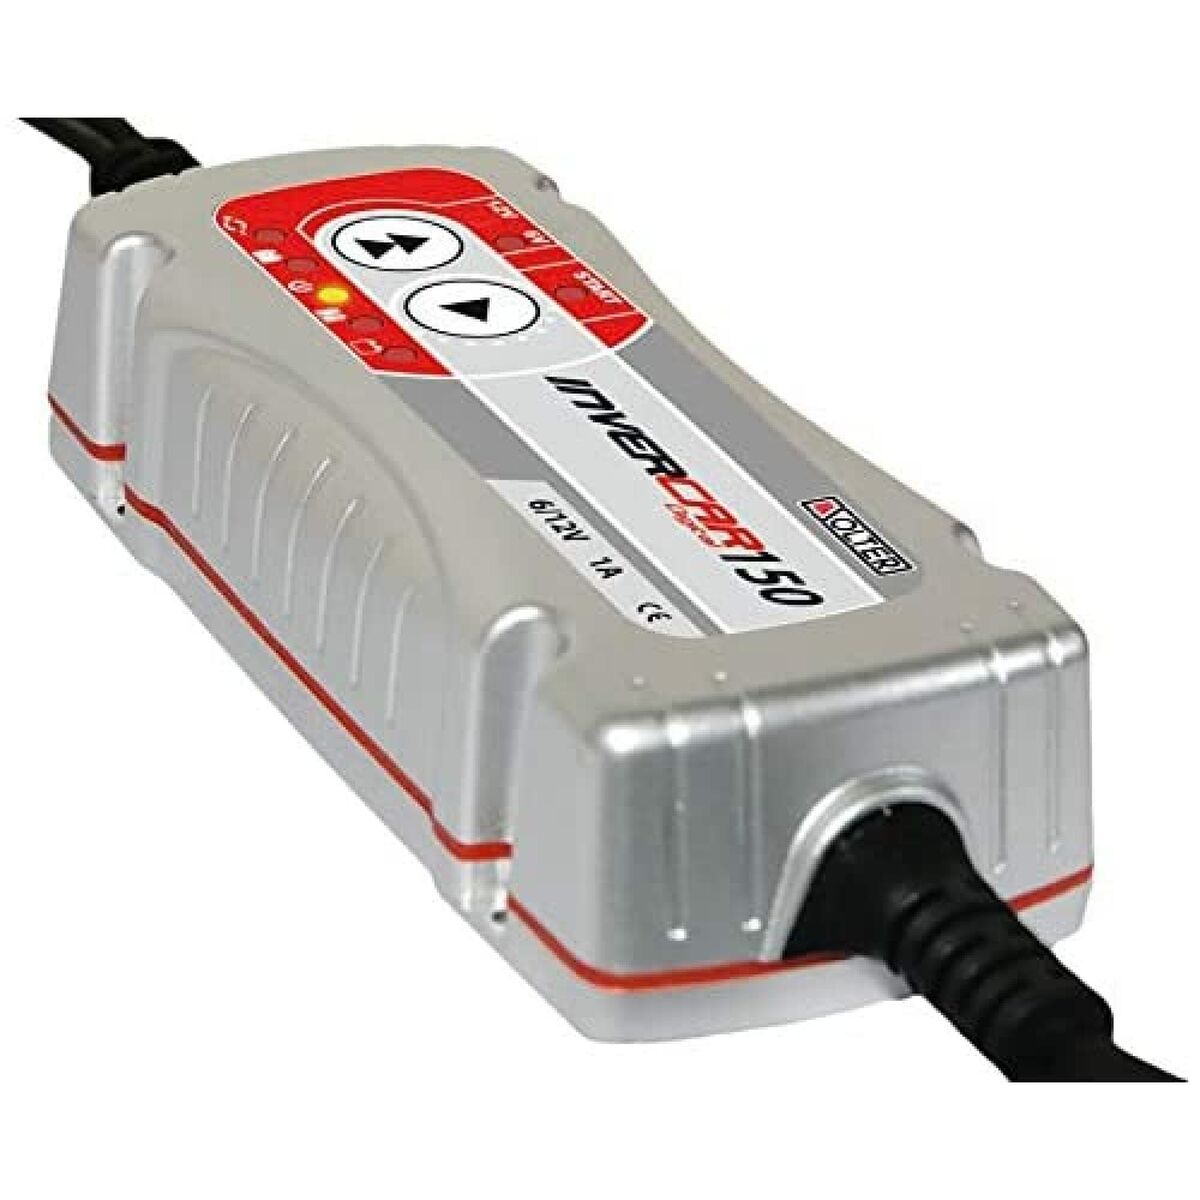 Cargador / Mantenedor de Batería Solter Invercar 150 1 A 6 v - 12